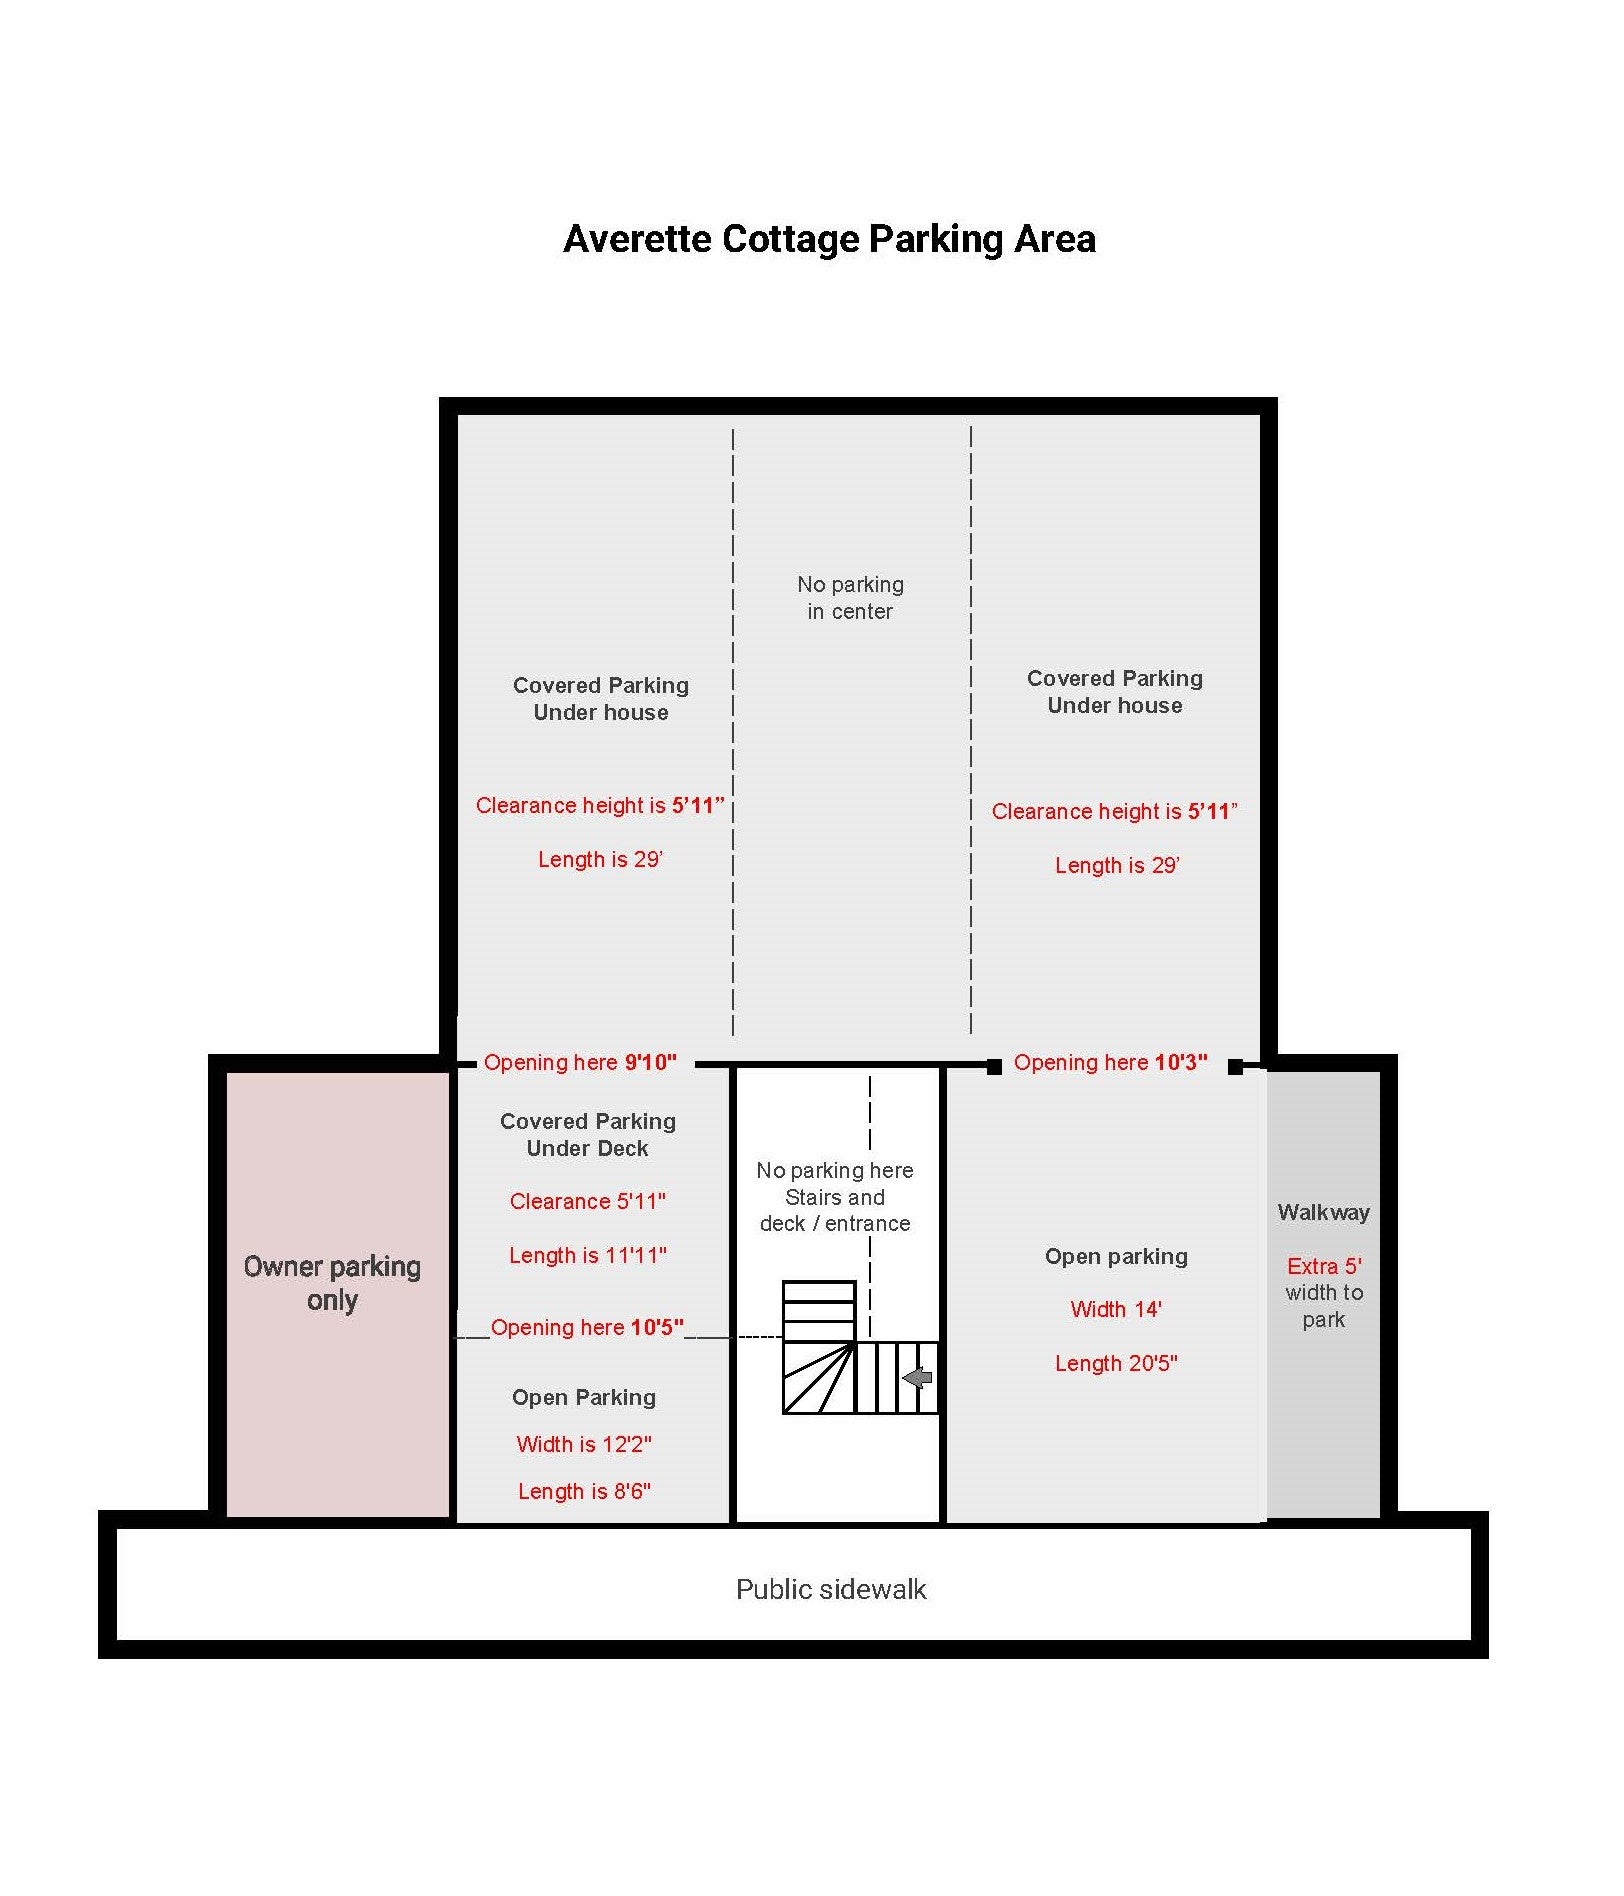 Averette+Cottage-+Parking+Area+Dimensions